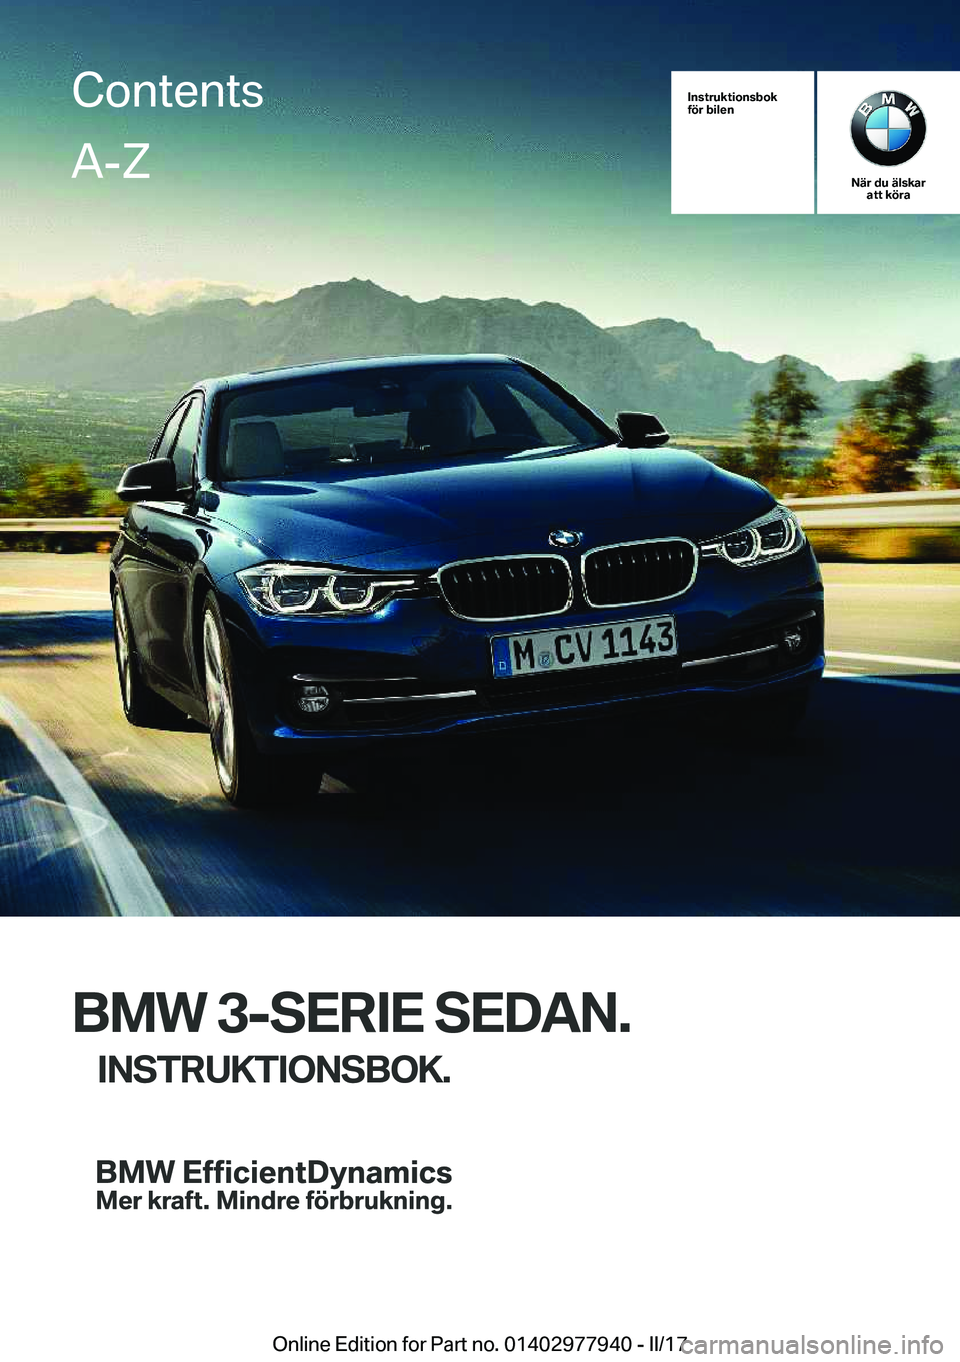 BMW 3 SERIES 2017  InstruktionsbÖcker (in Swedish) �I�n�s�t�r�u�k�t�i�o�n�s�b�o�k
�f�